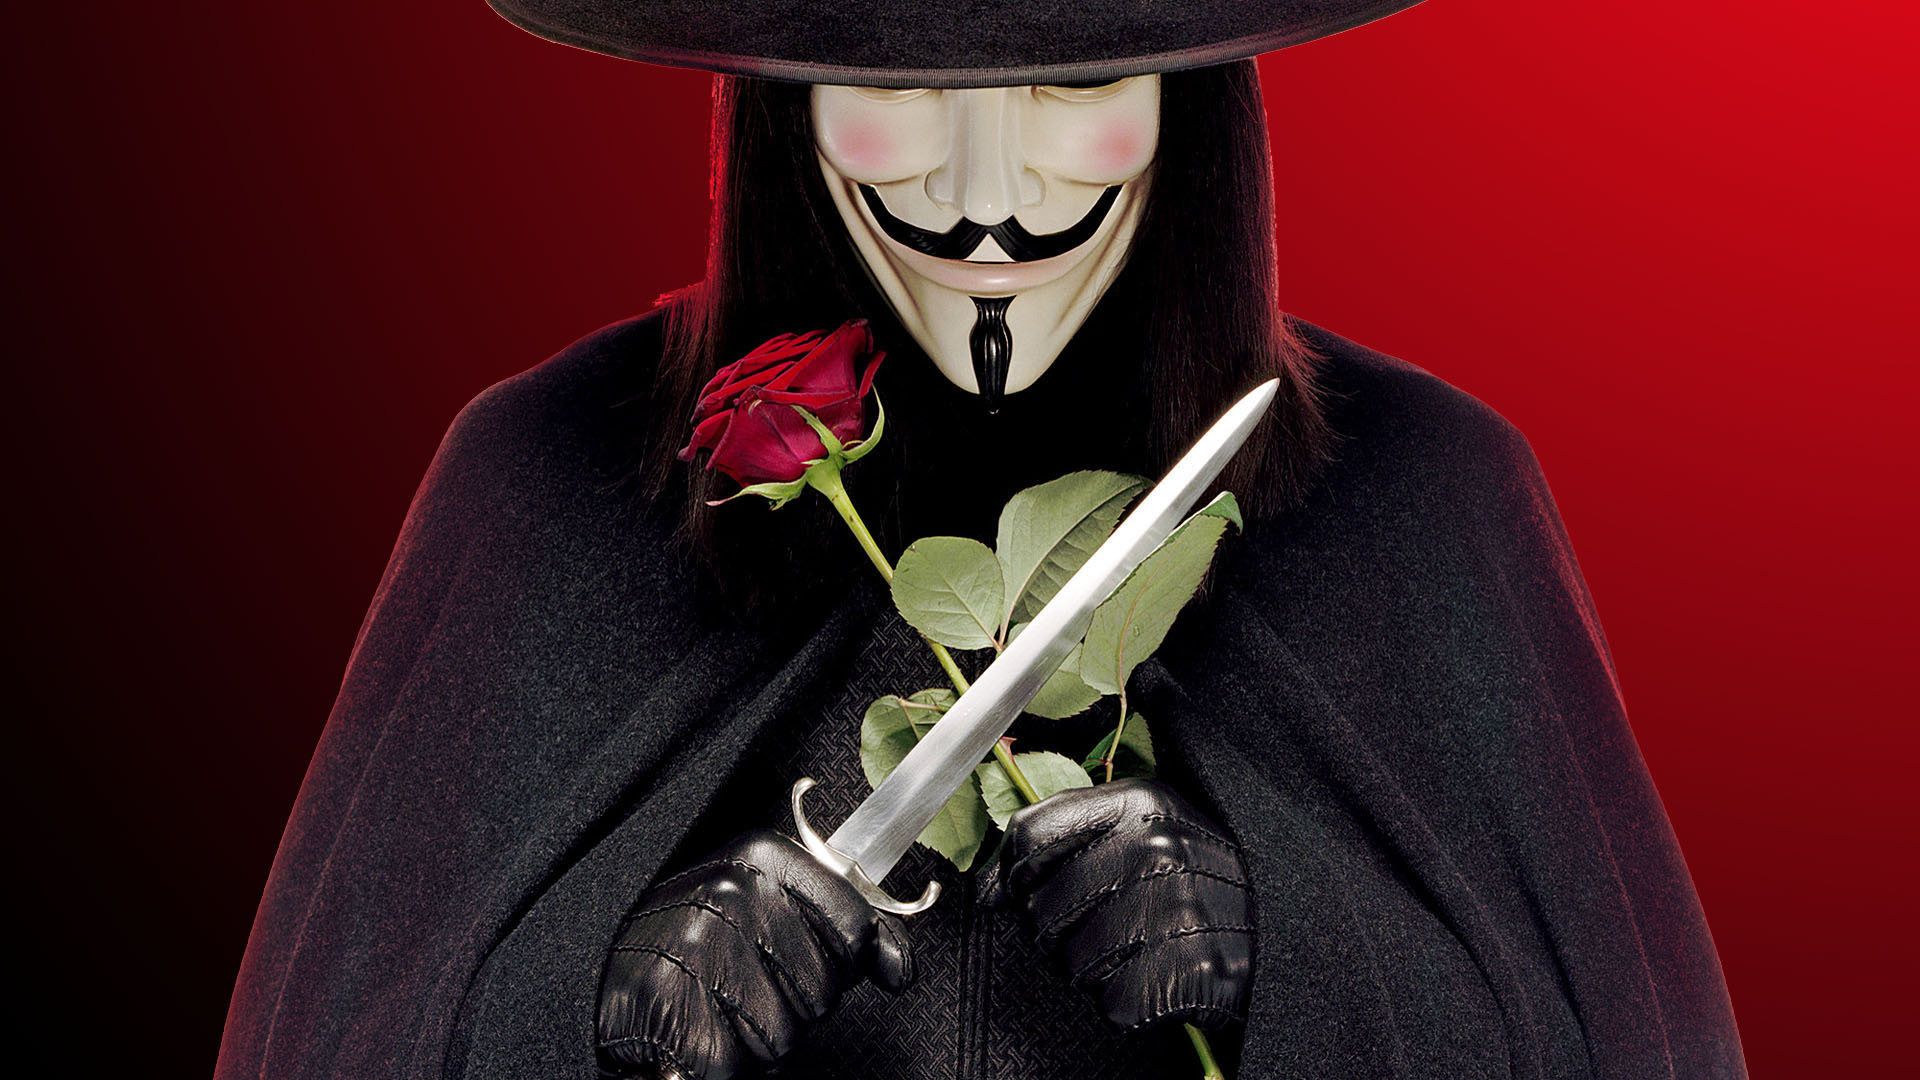 V for Vendetta - V for Vendetta Wallpaper (27694426) - Fanpop